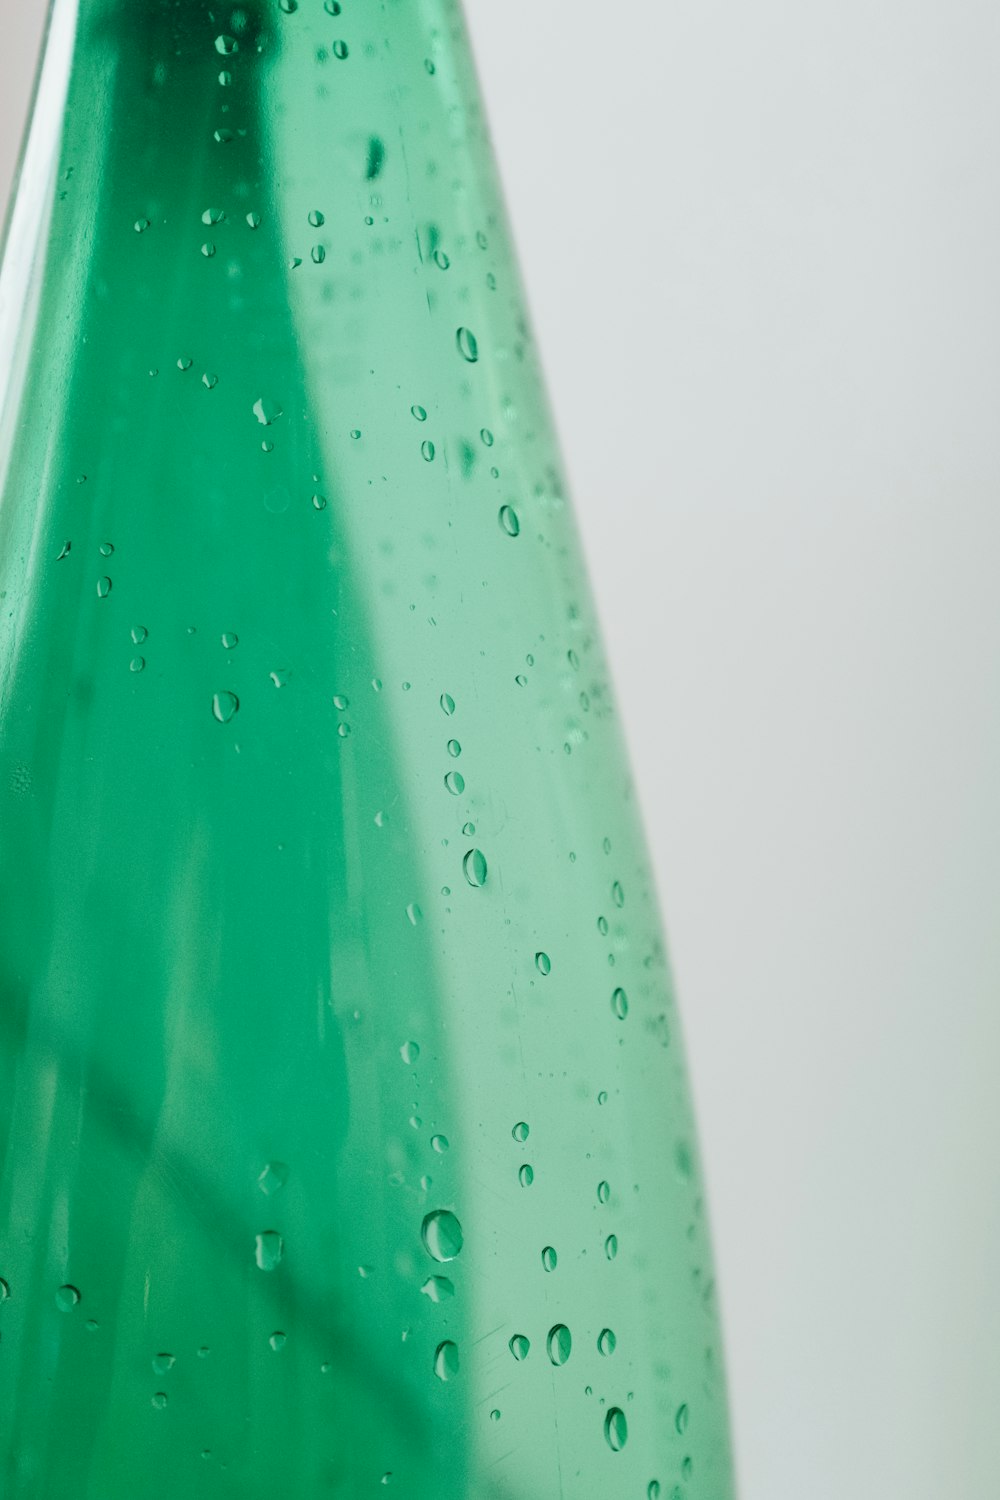 Bouteille en plastique verte avec des gouttelettes d’eau